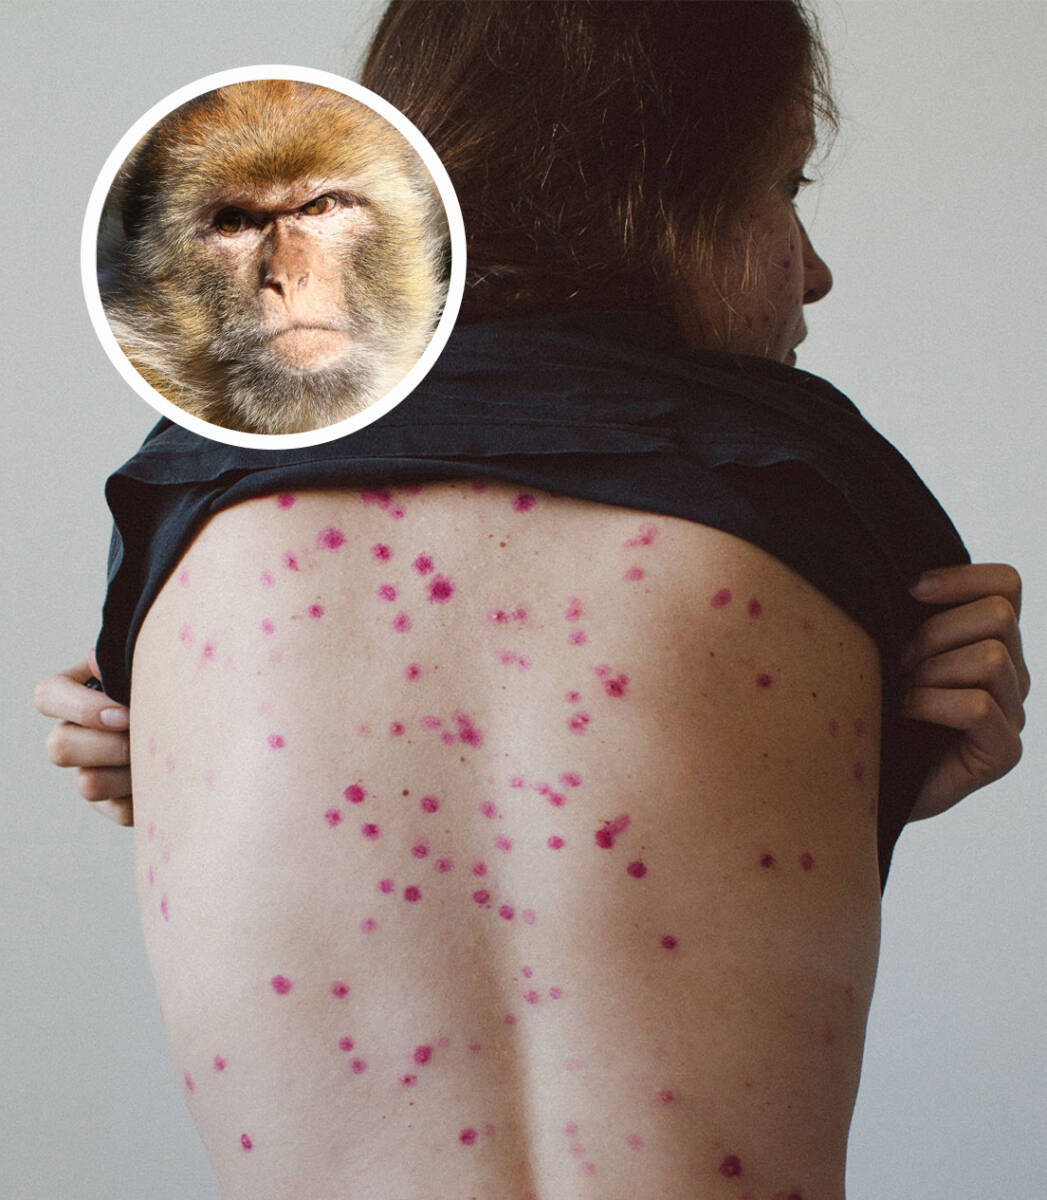 Viruela del mono: Ya hay dos casos confirmados en Bogotá El Instituto Nacional de Salud (INS) confirmó los dos casos de viruela símica (o viruela del mono) en dos hombres entre 28 y 45 años residentes en la ciudad de Bogotá, quienes viajaron a Europa en los últimos días.